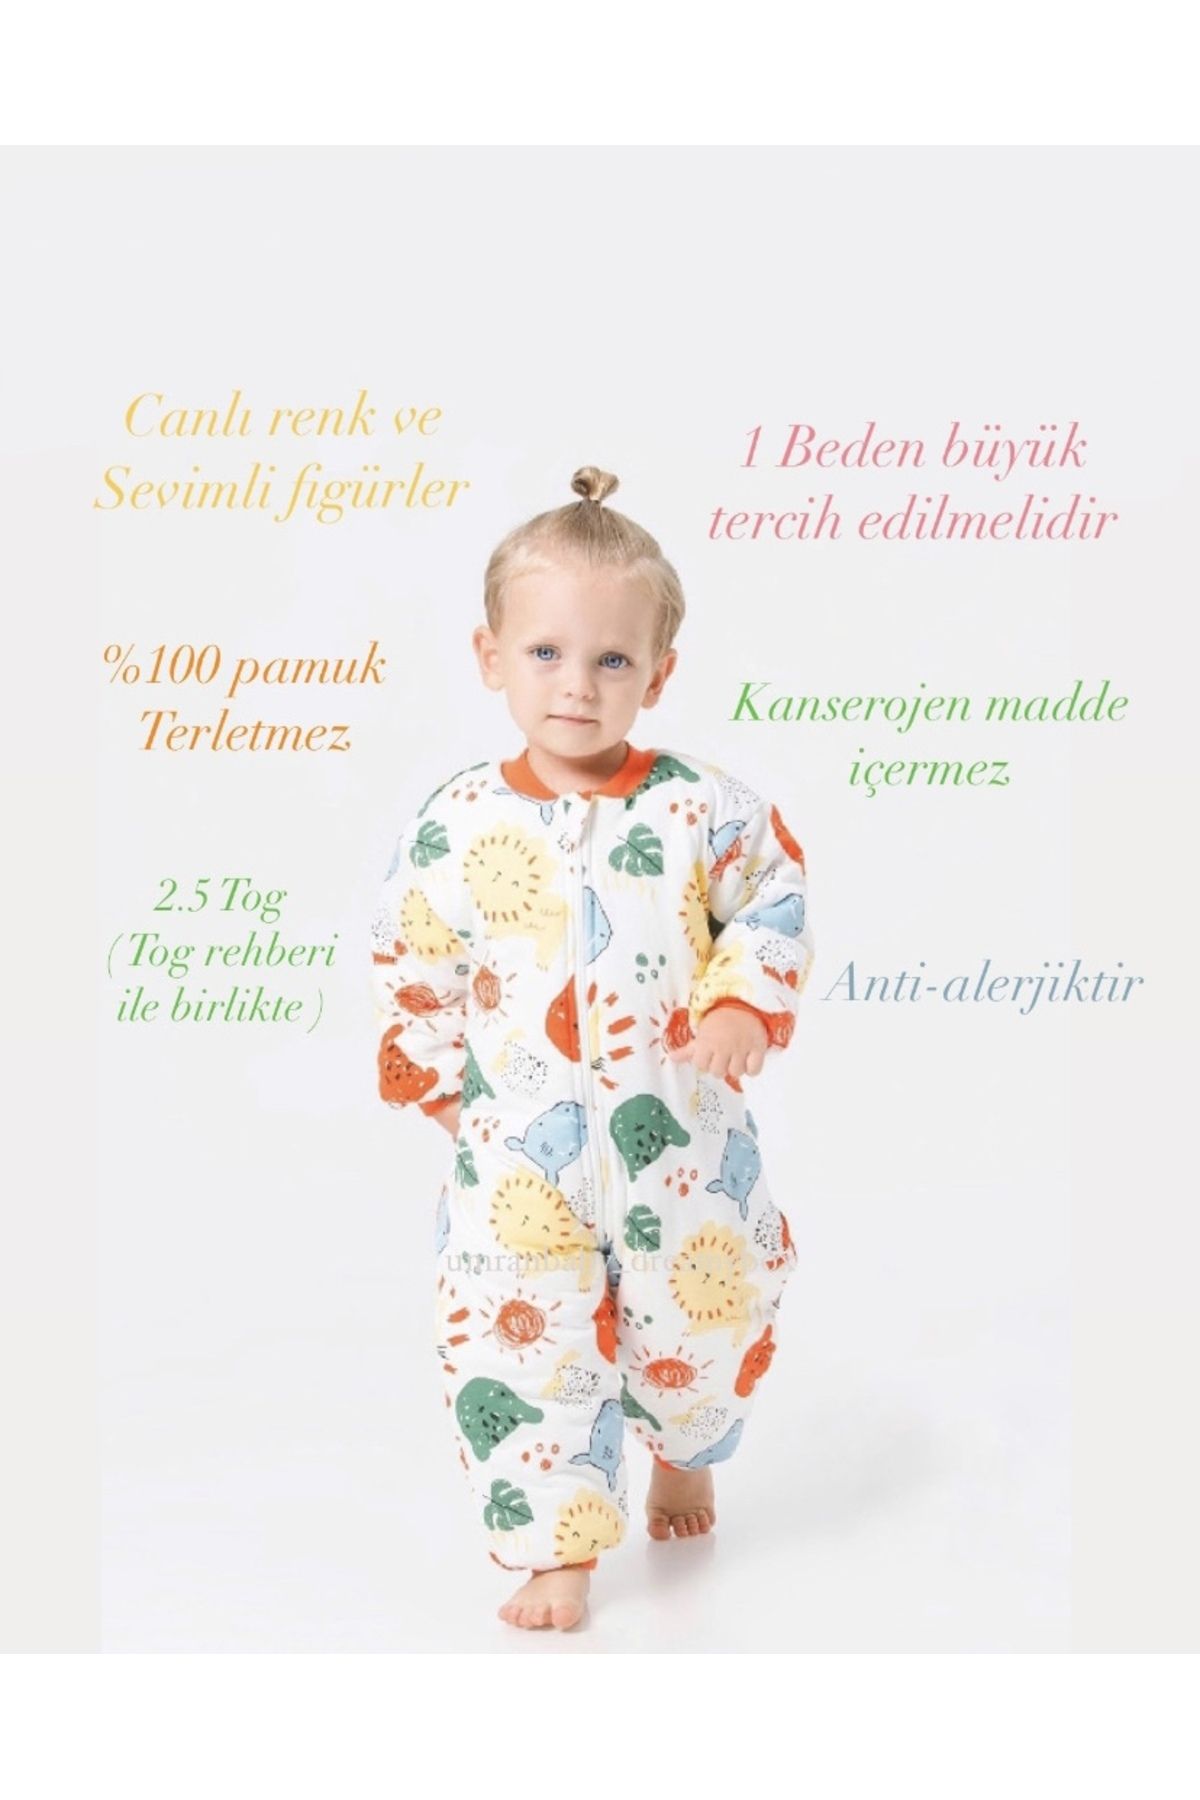 Ümranbaby Unisex Kız Erkek Çocuk Bebek Animal Desen Fermuarlı Premium Kalite 2.5 Tog Lüx Uyku Tulumu 1-6 Yaş